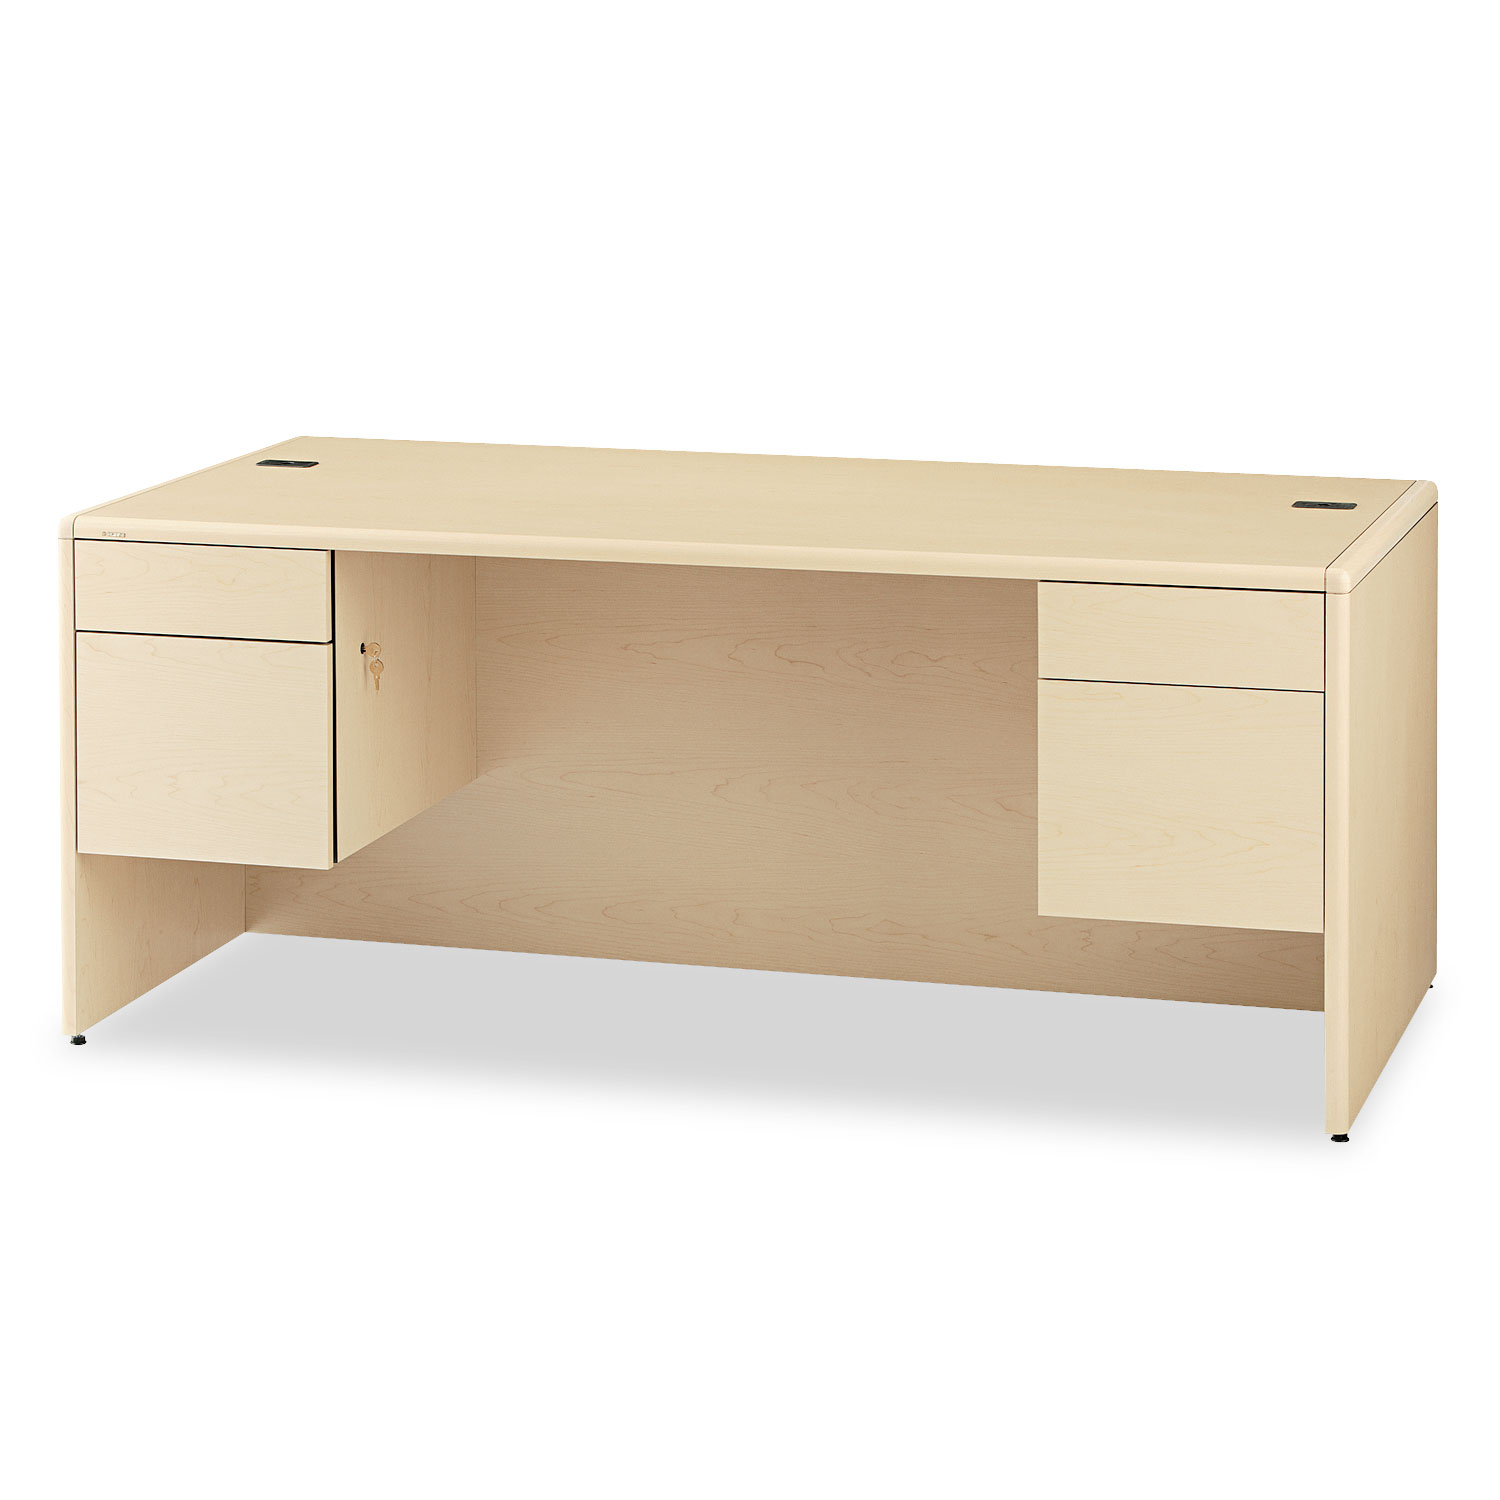  HON H10791.DD 10700 Series Desk, 3/4 Height Double Pedestals, 72w x 36d x 29.5h, Natural Maple (HON10791DD) 